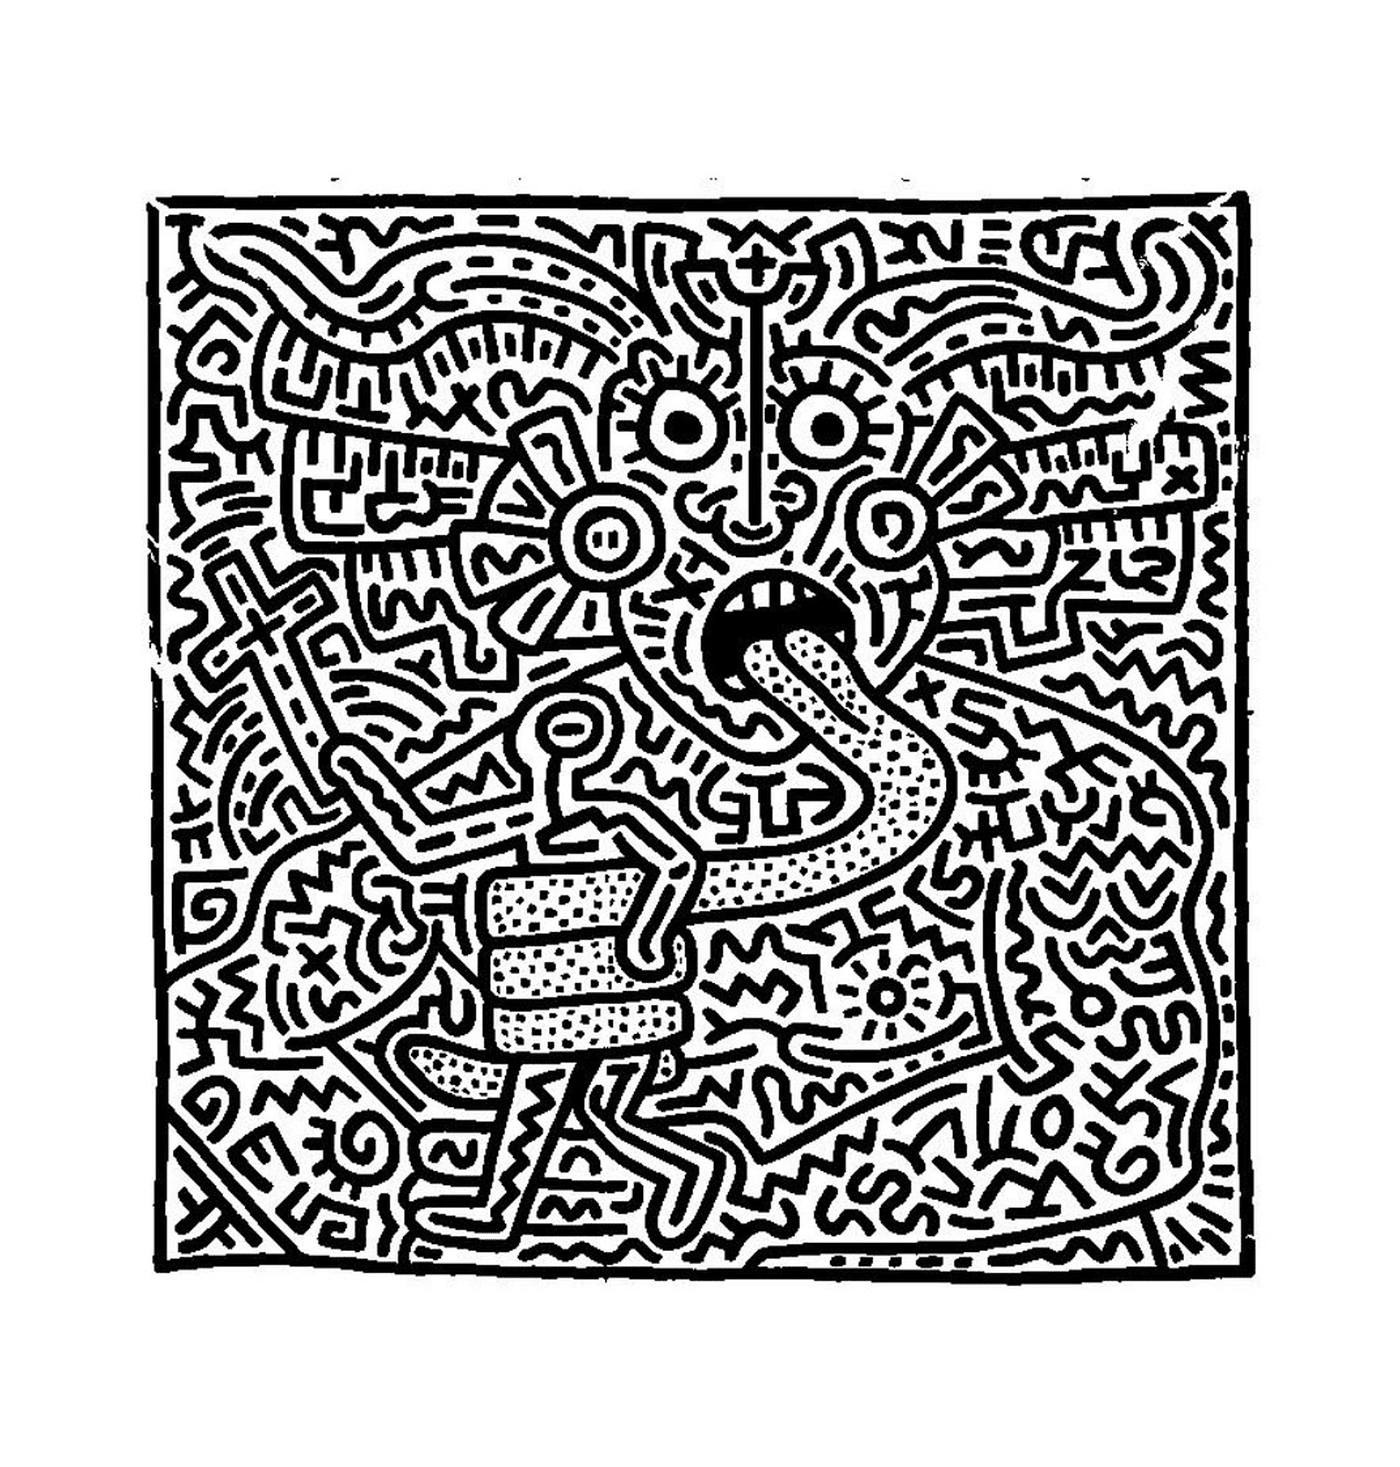  il volto di un uomo secondo Keith Haring 